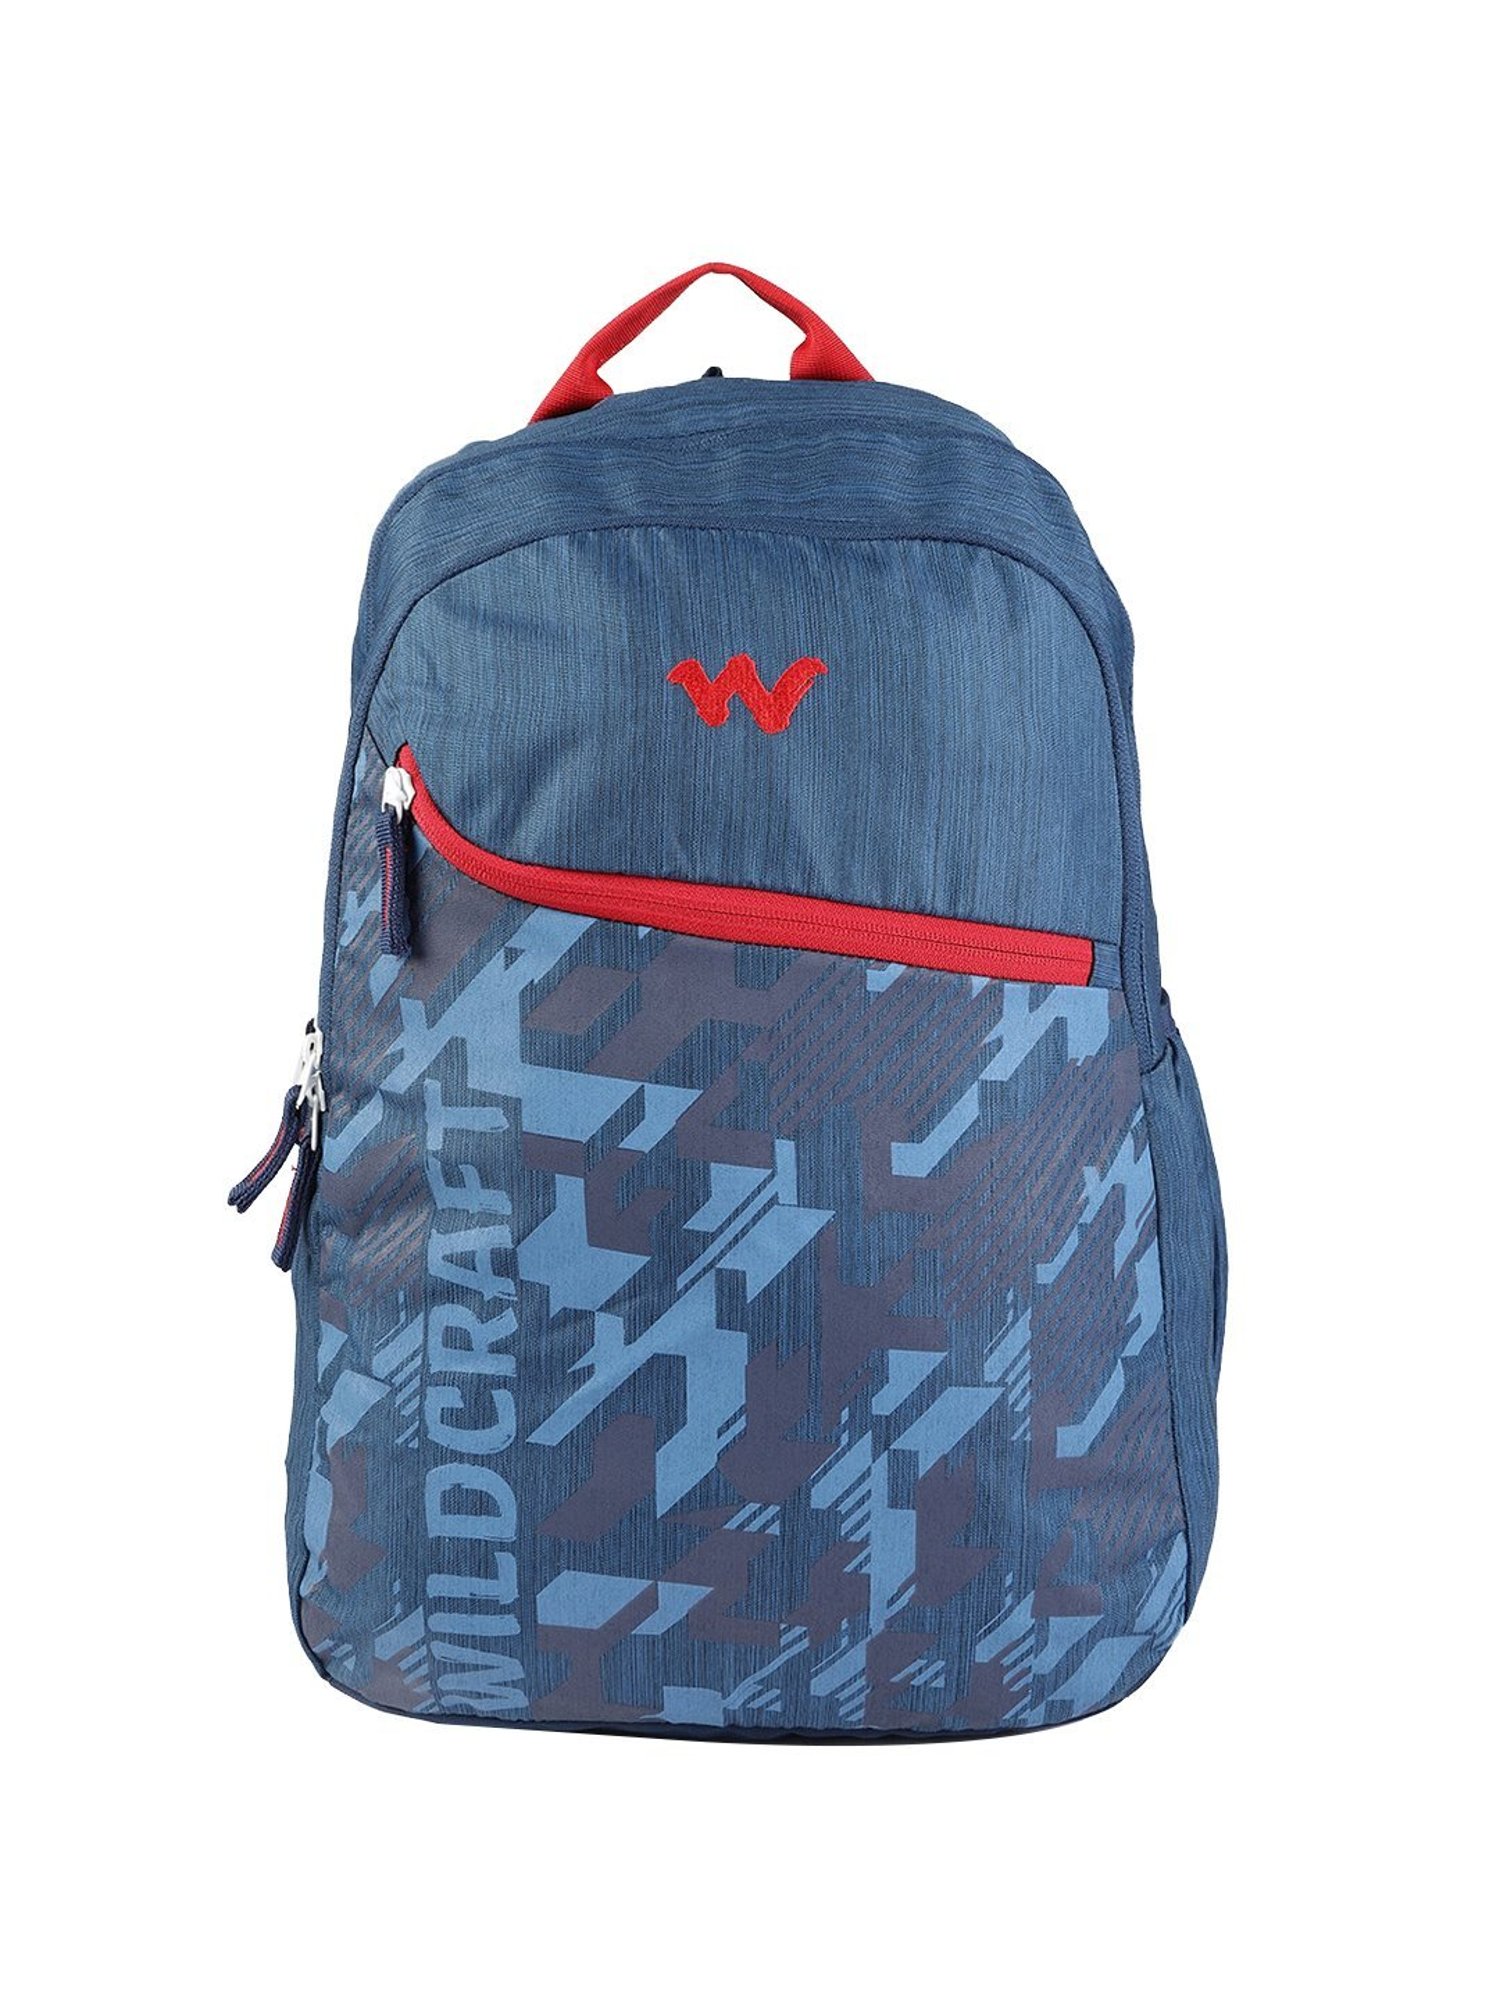 Accessories Wildcraft Bags Rucksacks - Buy Accessories Wildcraft Bags  Rucksacks online in India